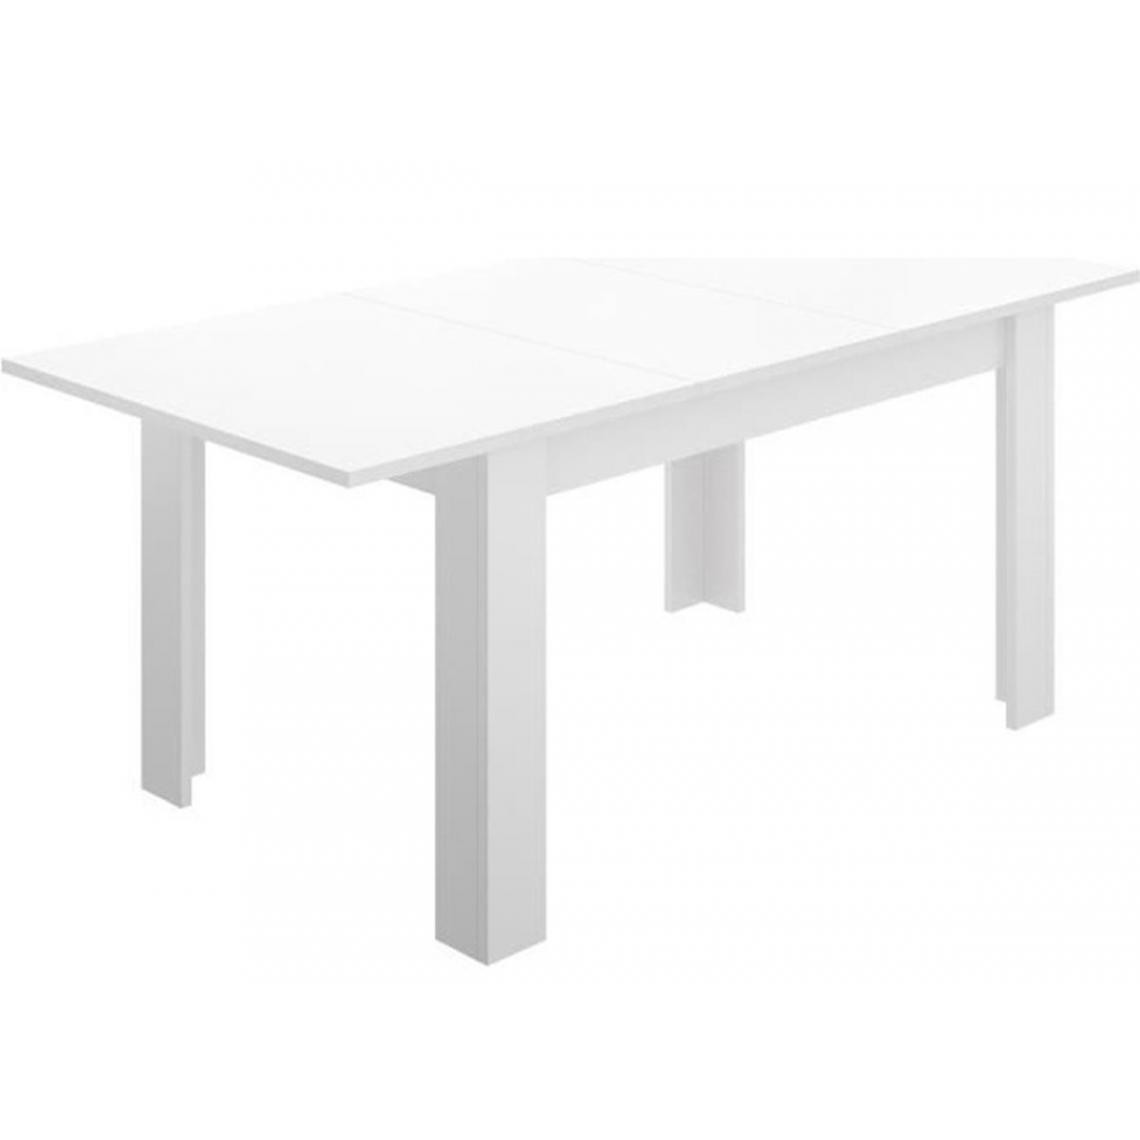 Pegane - Table de salon extensible coloris blanc brillant - Longueur 140-190 x Hauteur 77 x Profondeur 90 cm - Tables à manger